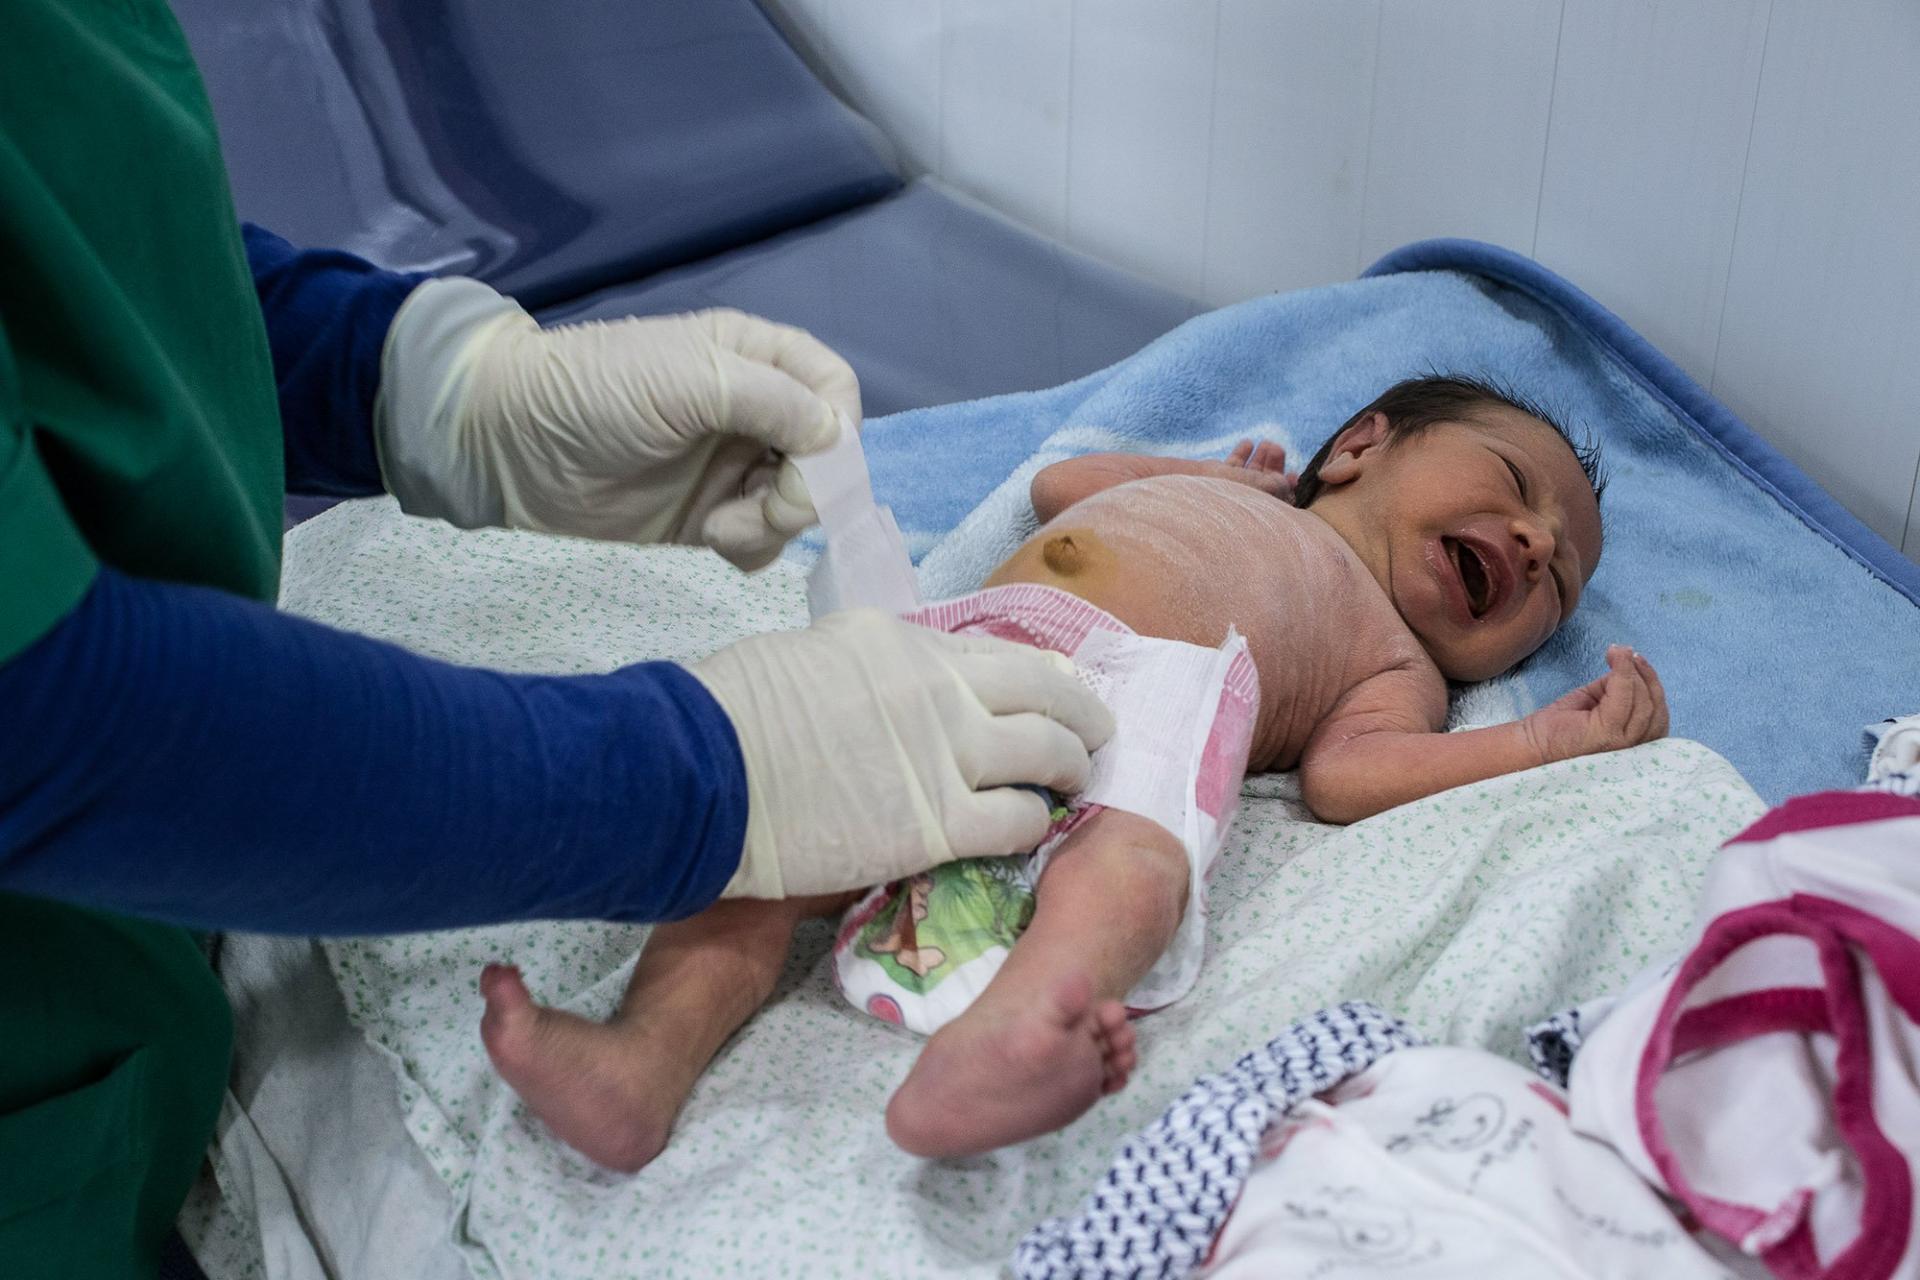 Iraq, midwife, maternity